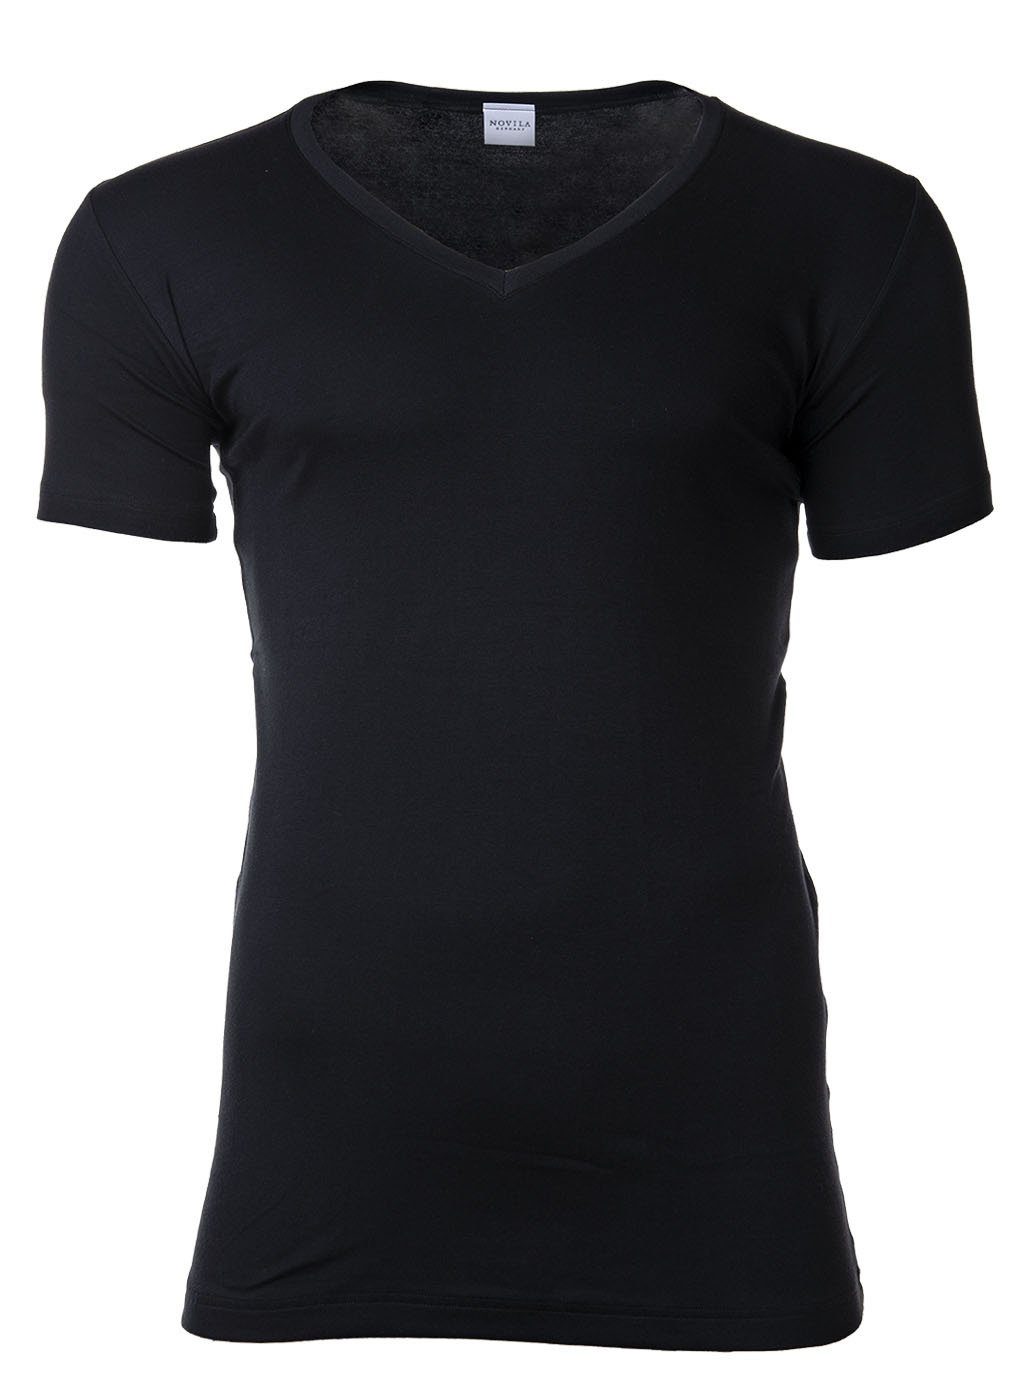 Novila T-Shirt Herren T-Shirt - V-Ausschnitt, Natural Comfort Schwarz